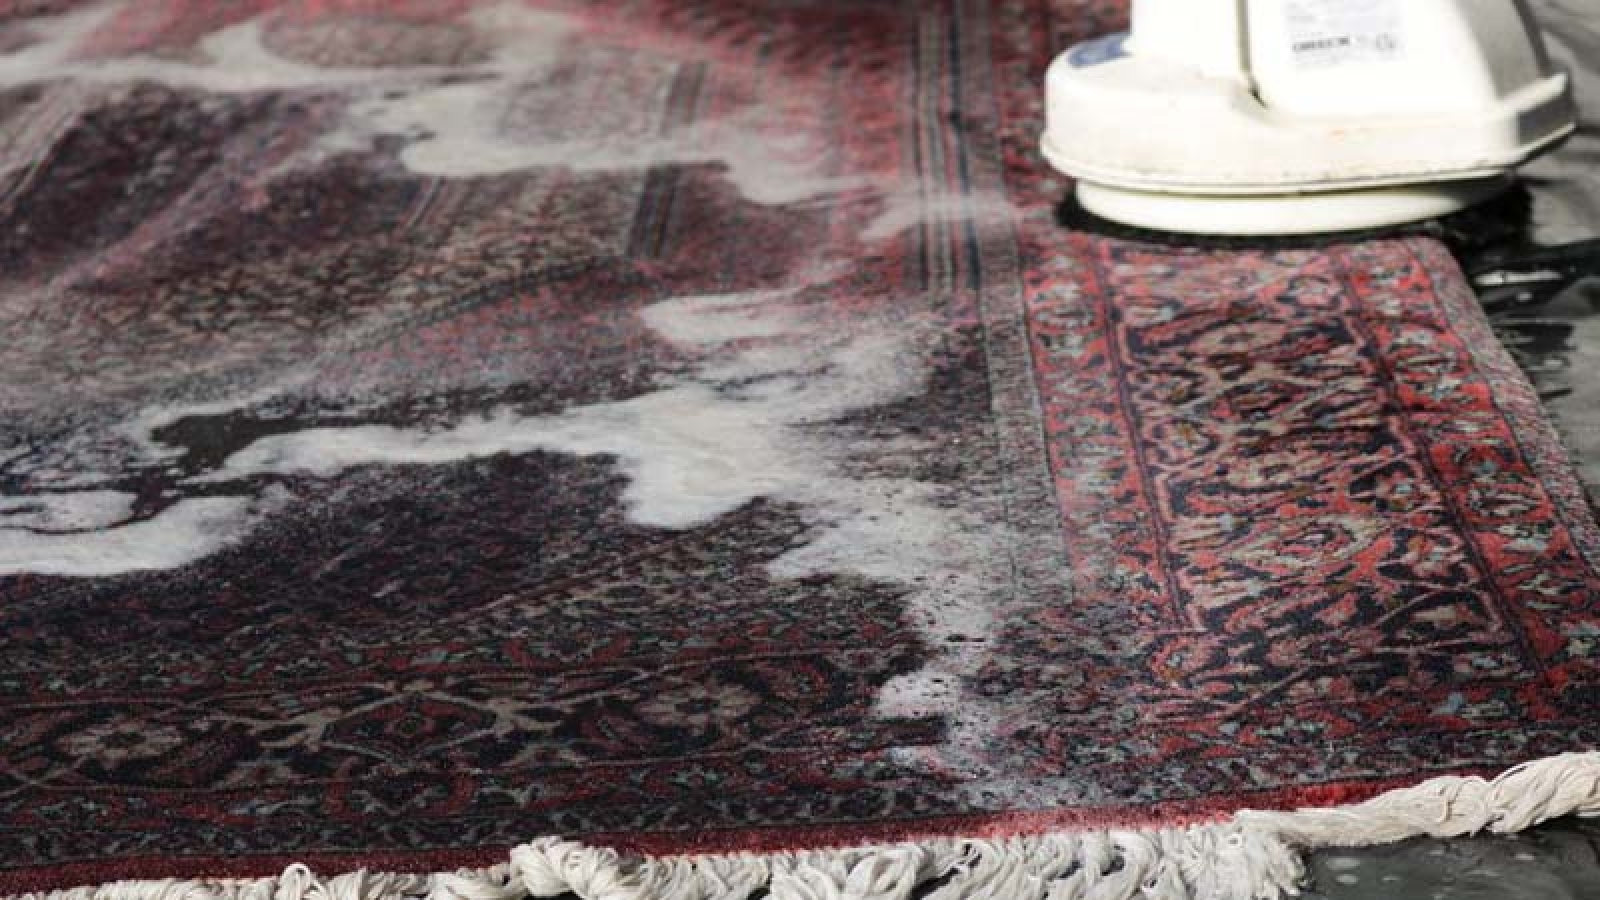 بهترین قالیشویی در کرج نی نی سایت | قالیشویی ادیب کرج | قالیشویی ارزان در کرج